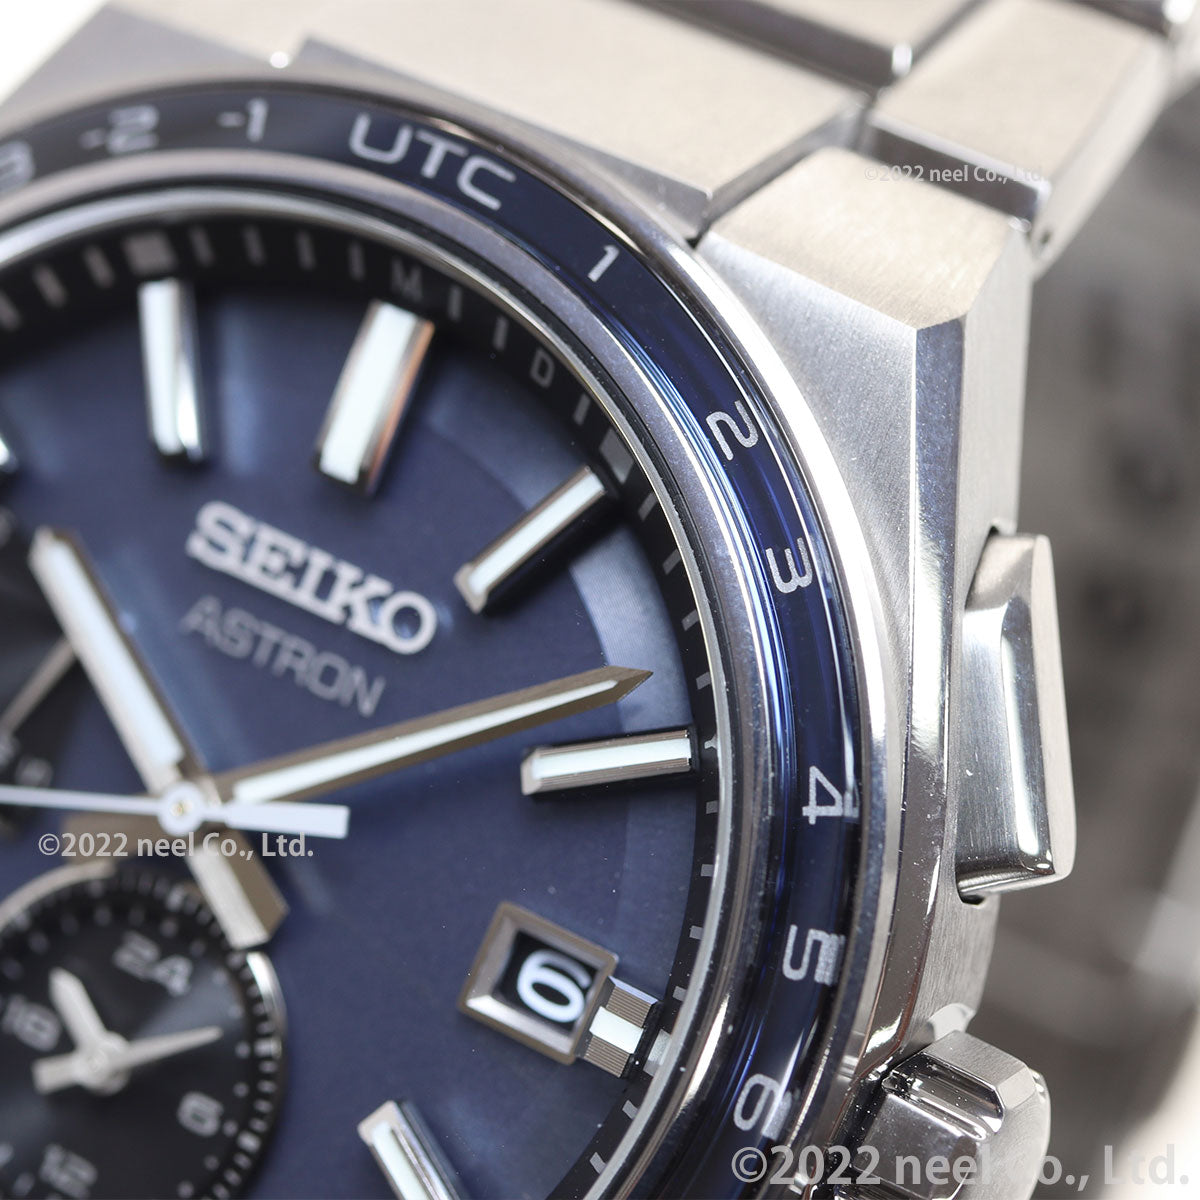 セイコー アストロン ネクスター SBXY037 NEXTER メンズ 腕時計 ソーラー 電波 ワールドタイム ブルーグレー 日本製 SEIKO ASTRON